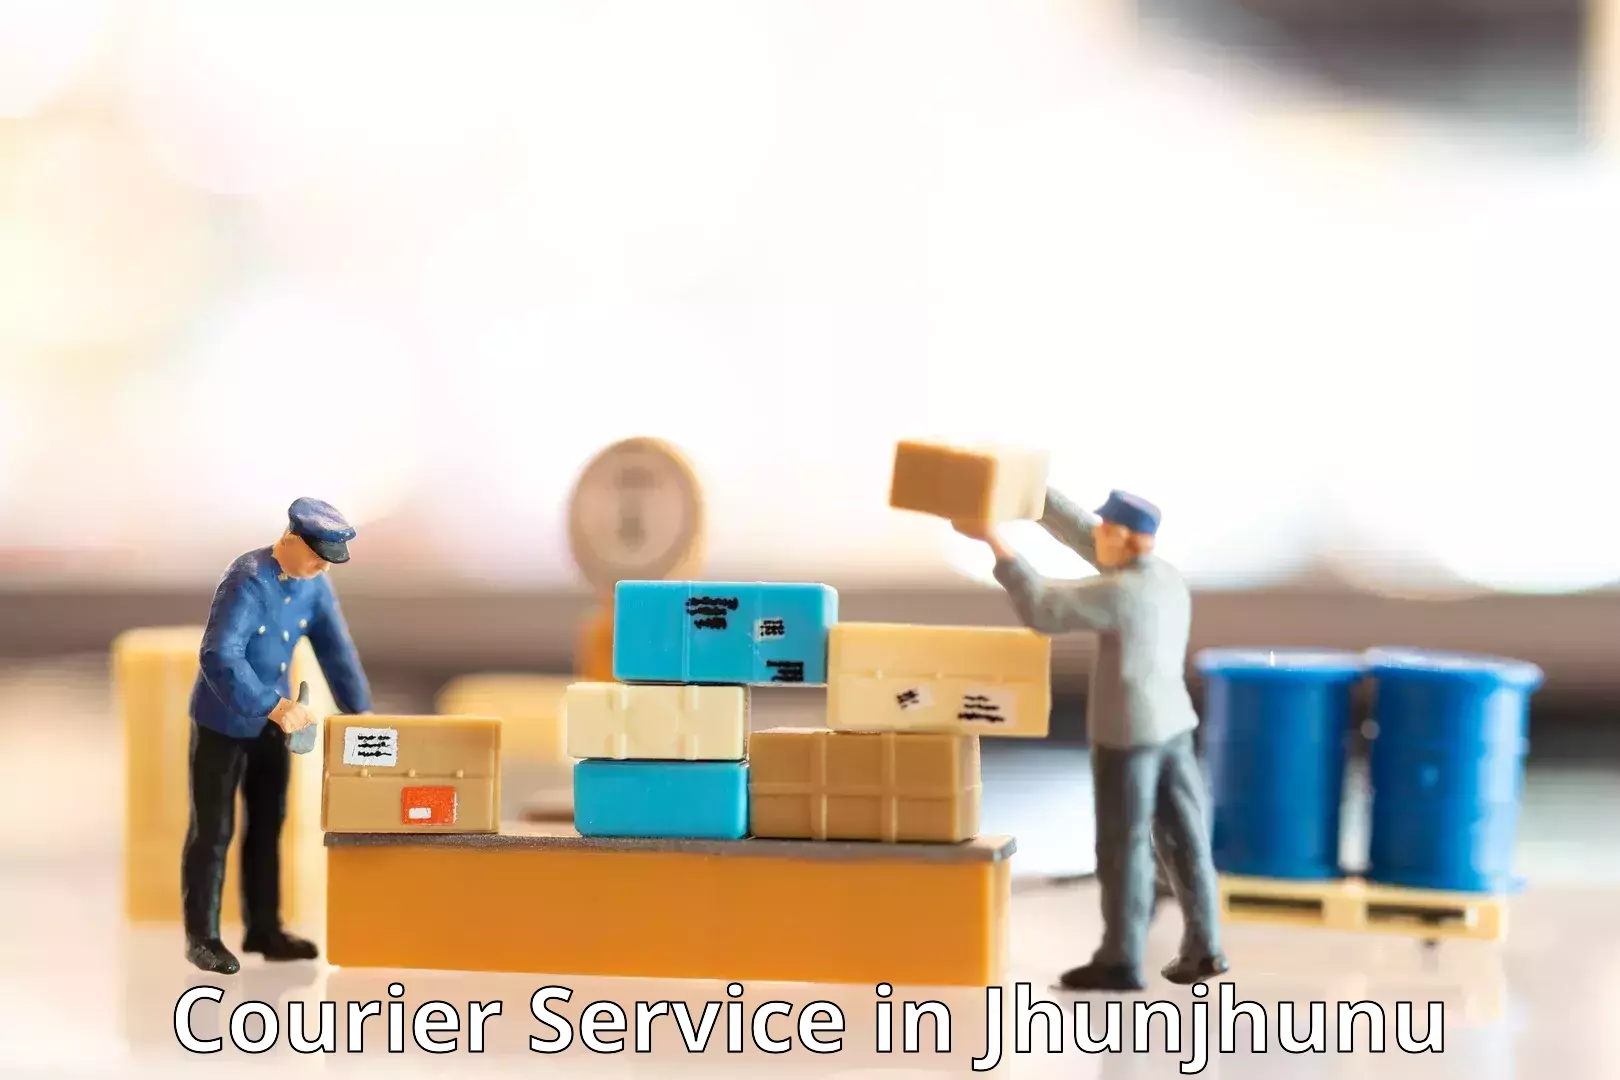 Cargo courier service in Jhunjhunu